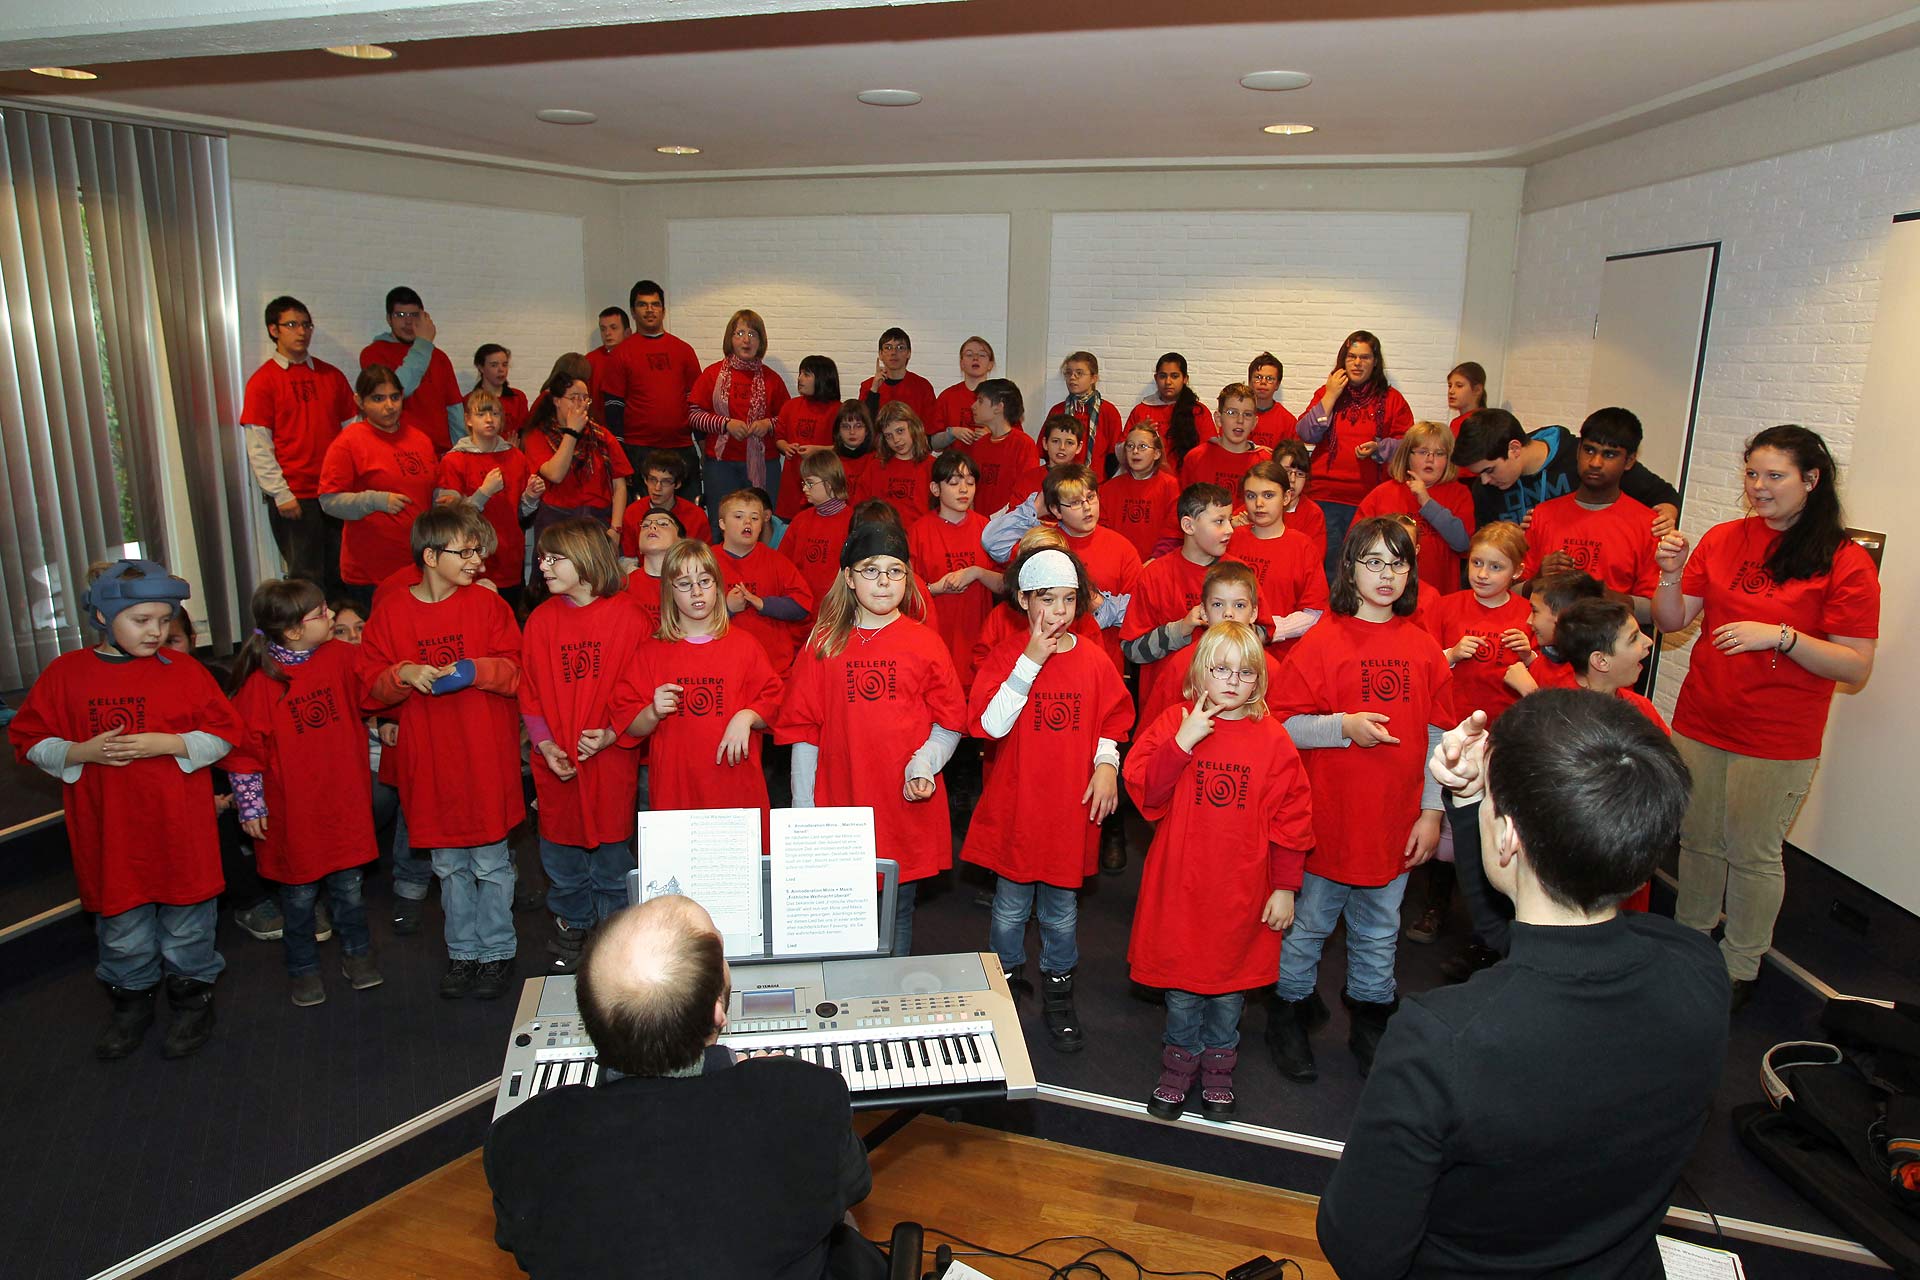 Zum fünften Mal brachte die Helen-Keller-Schule musikalische Weihnachtsgrüße in das Rathaus